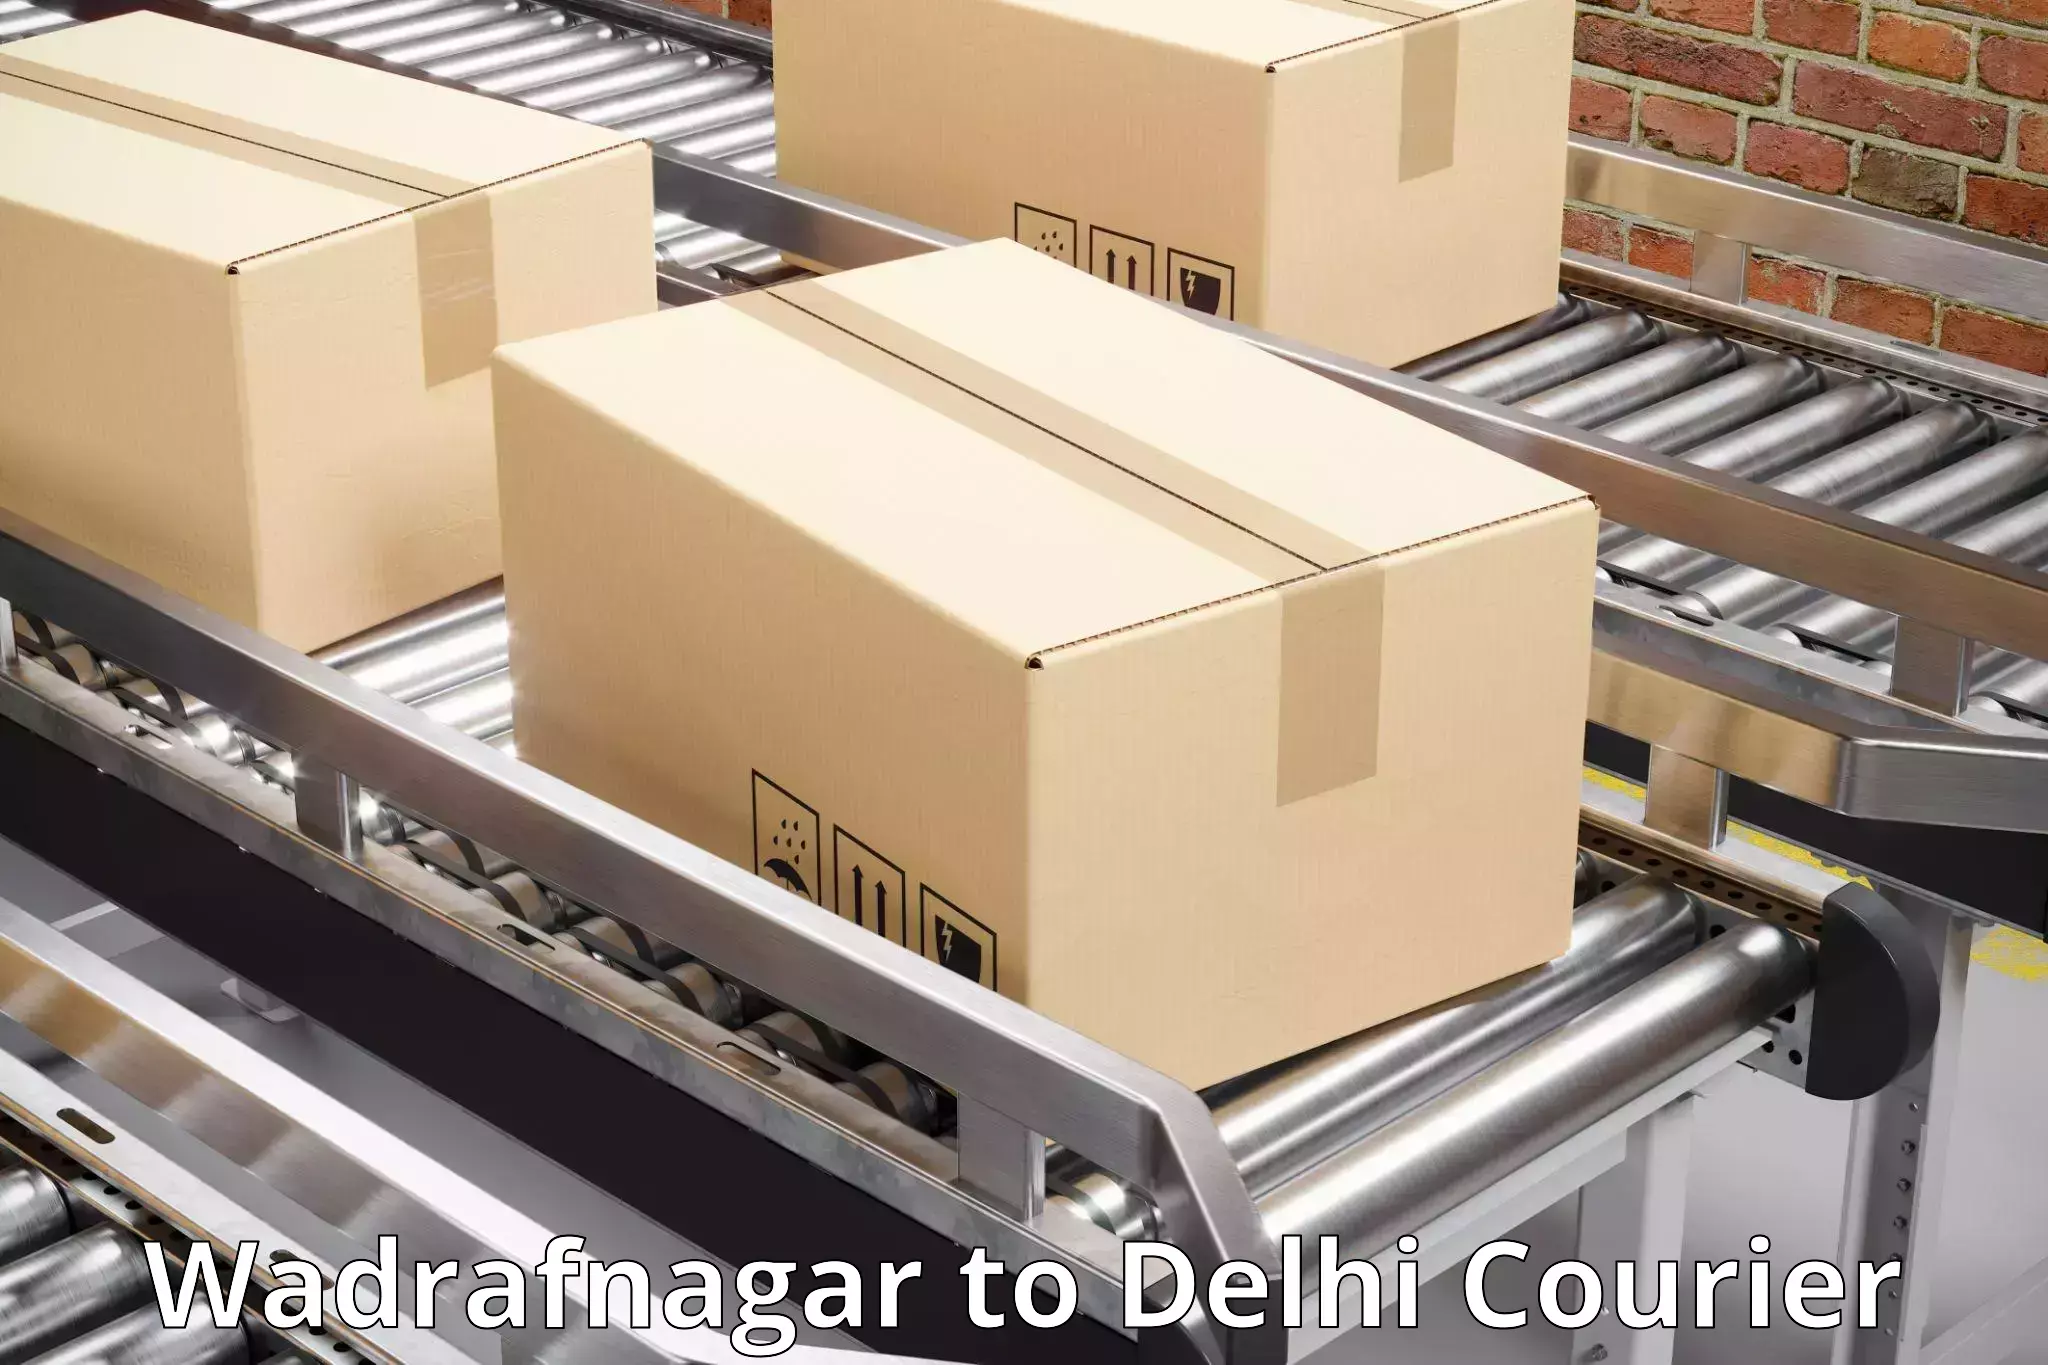 On-time delivery services Wadrafnagar to Sansad Marg